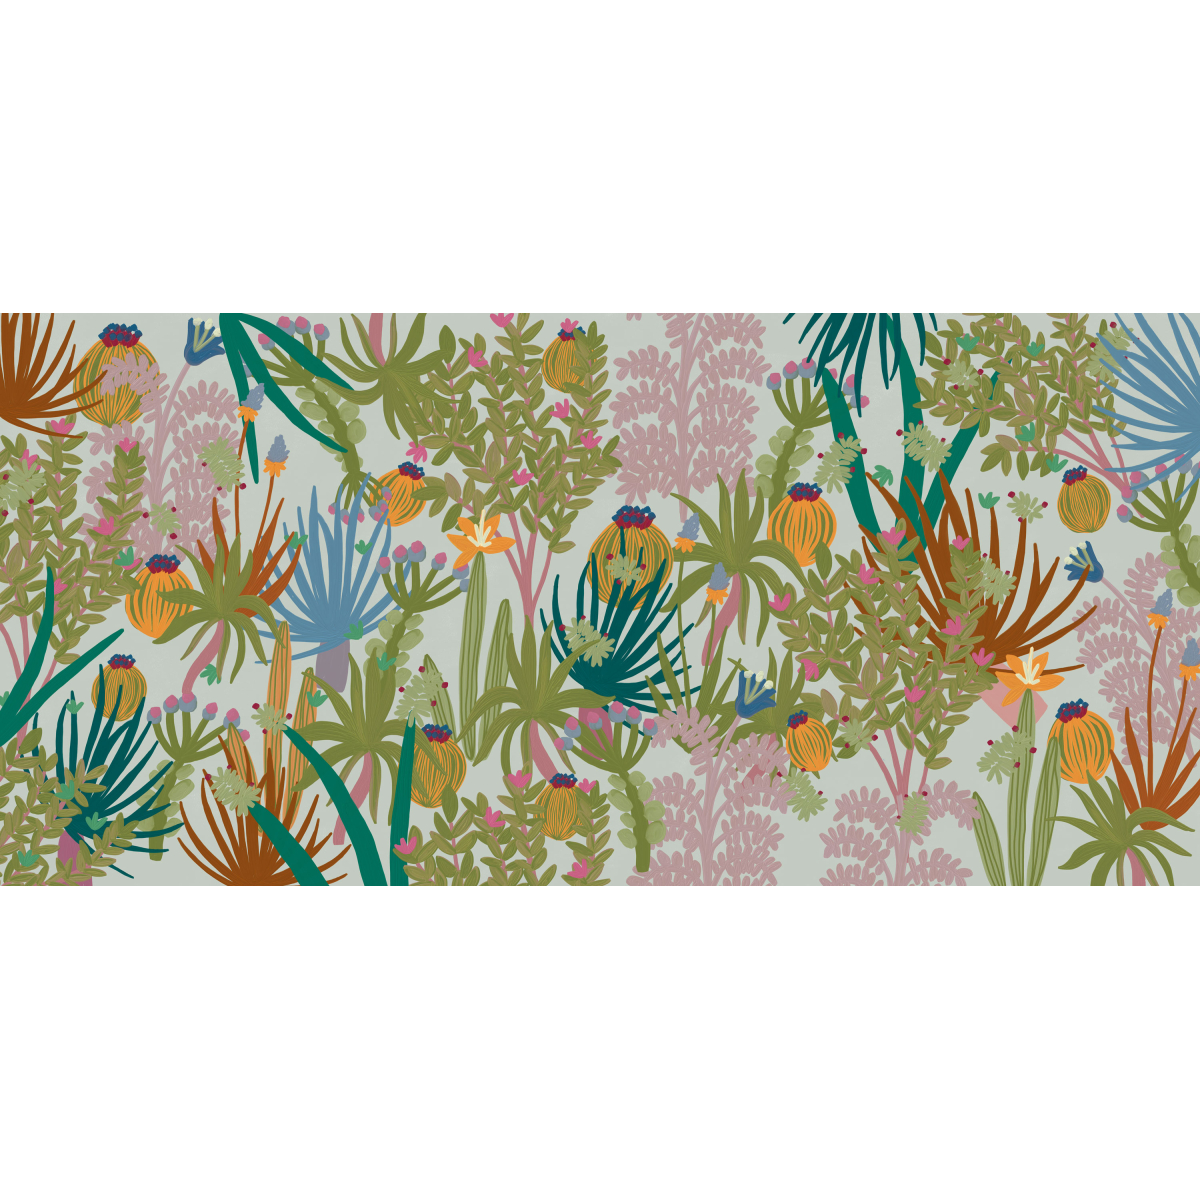 Panoramic wallpaper cactus jungle - Zoé Jiquel Collection - Acte-Deco